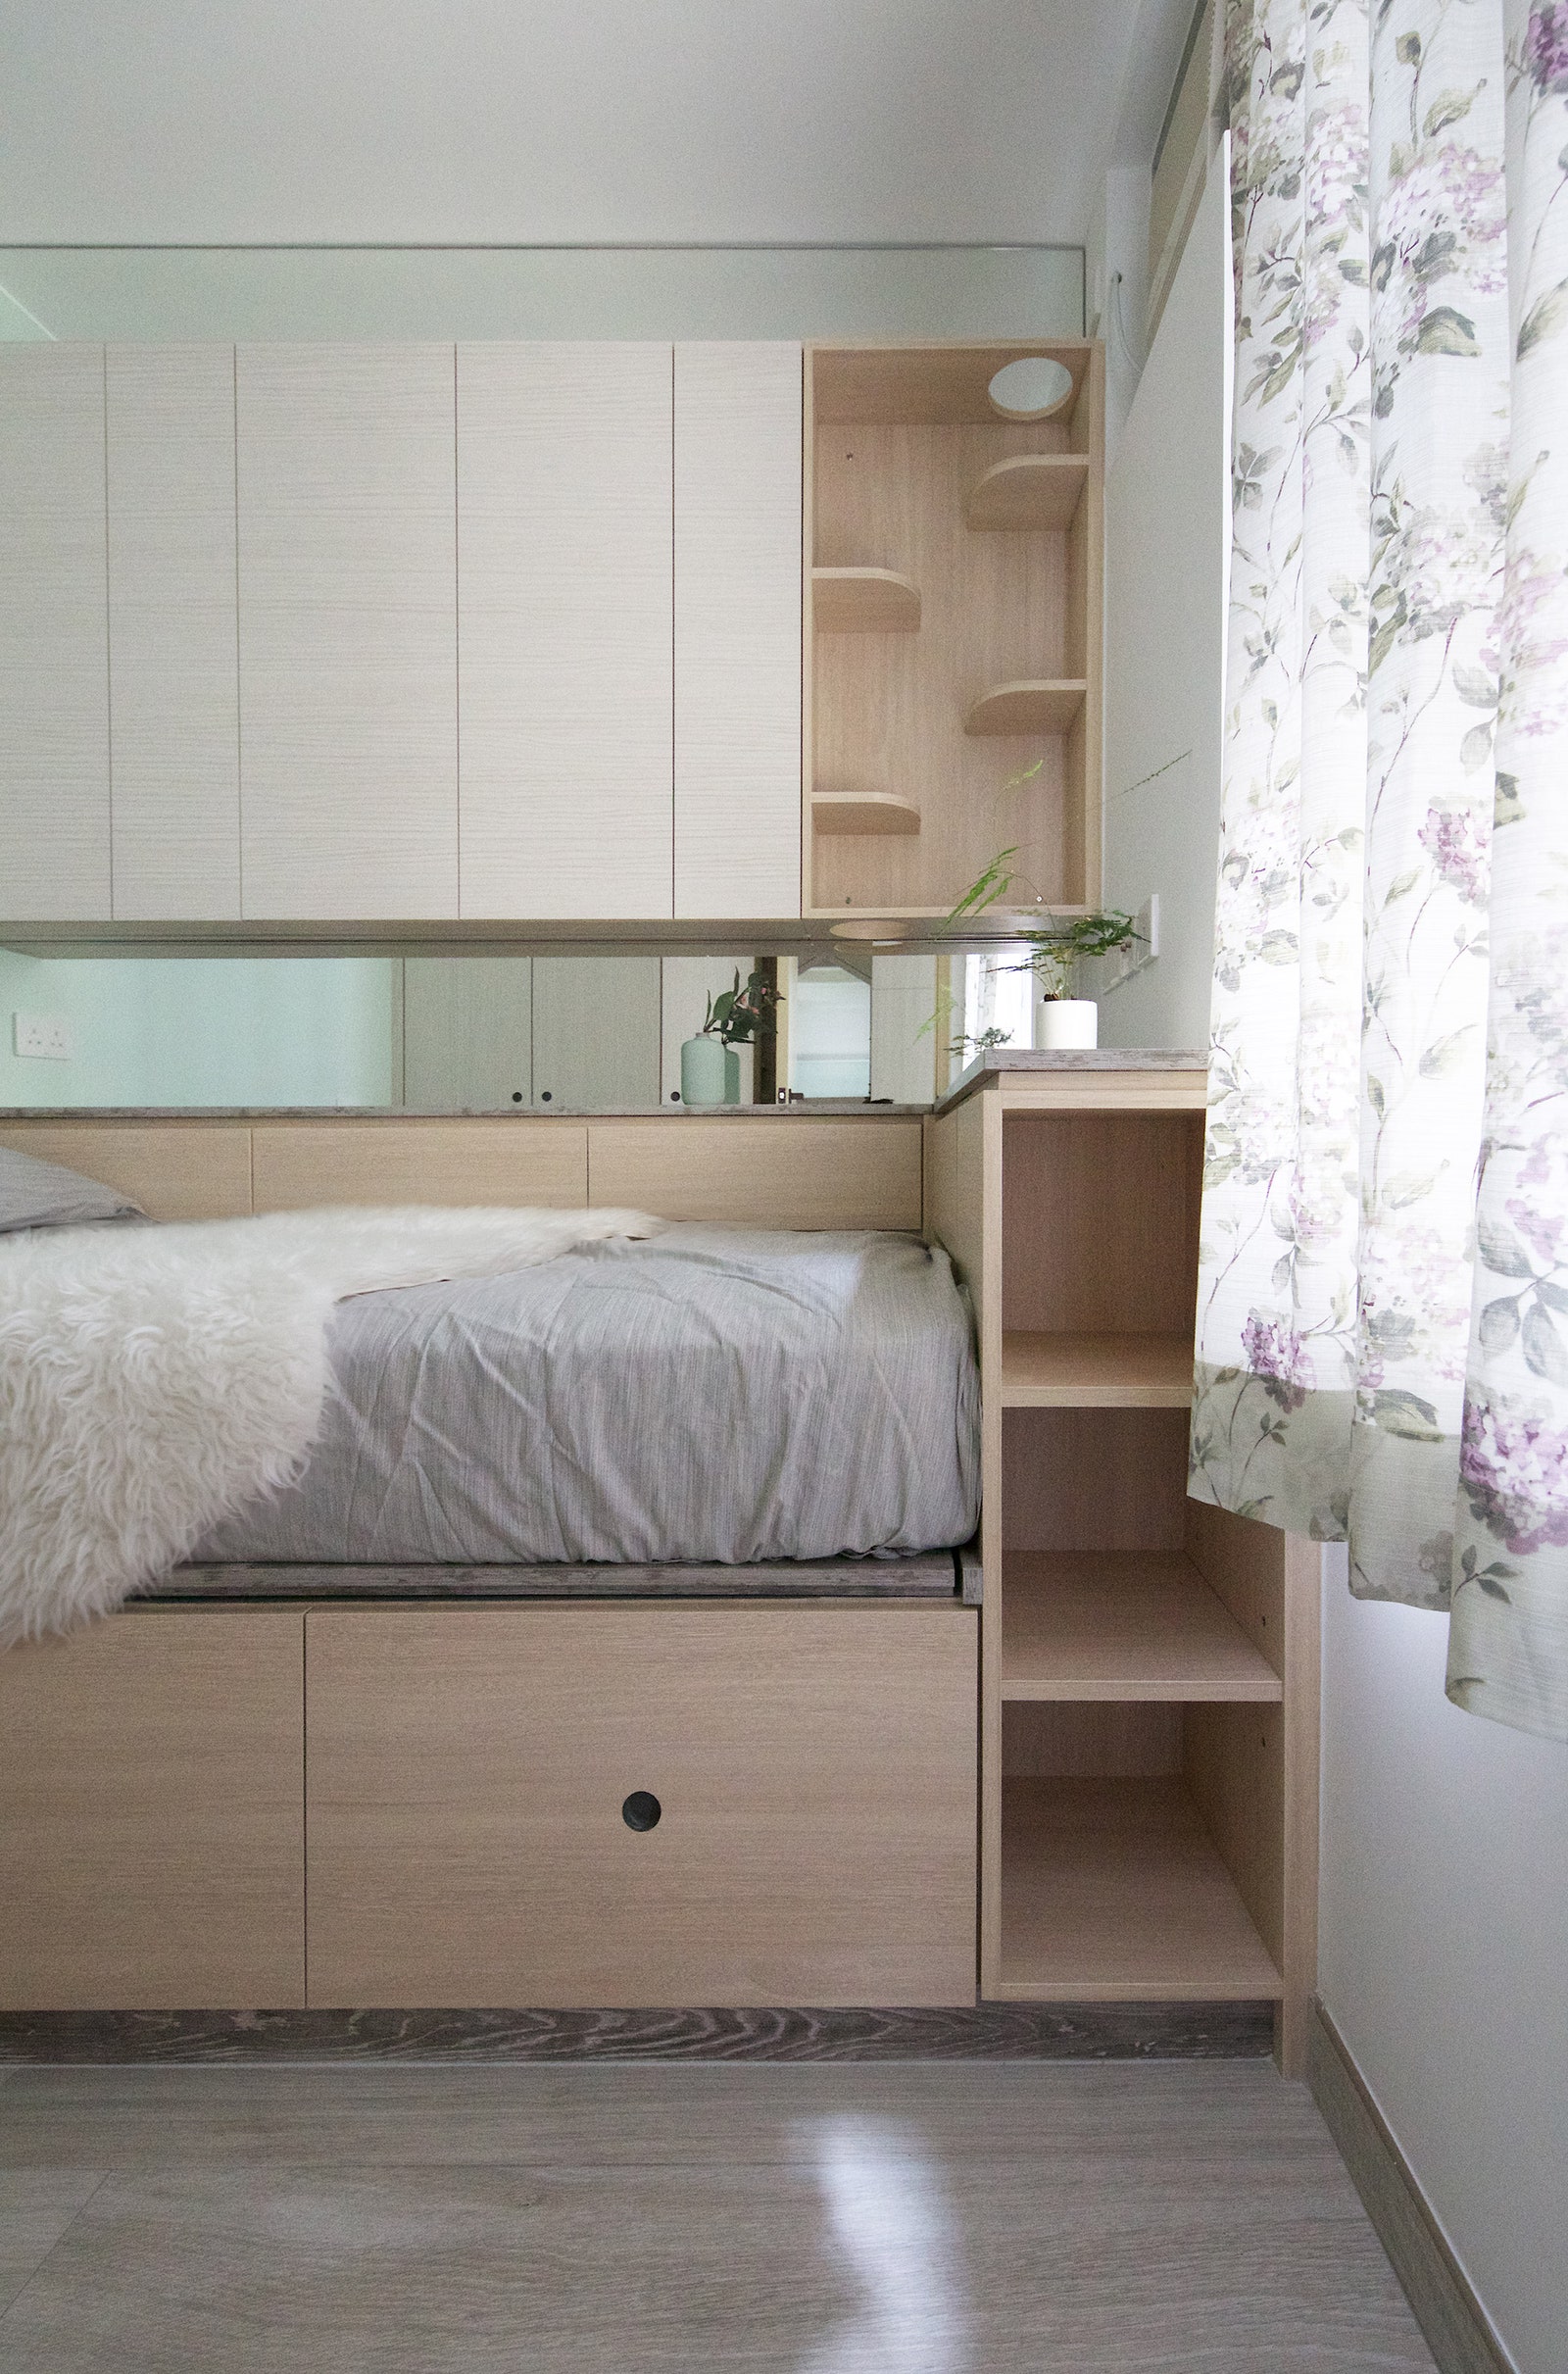 Дизайн квартирытрансформер для молодой пары с питомцами 42 м²